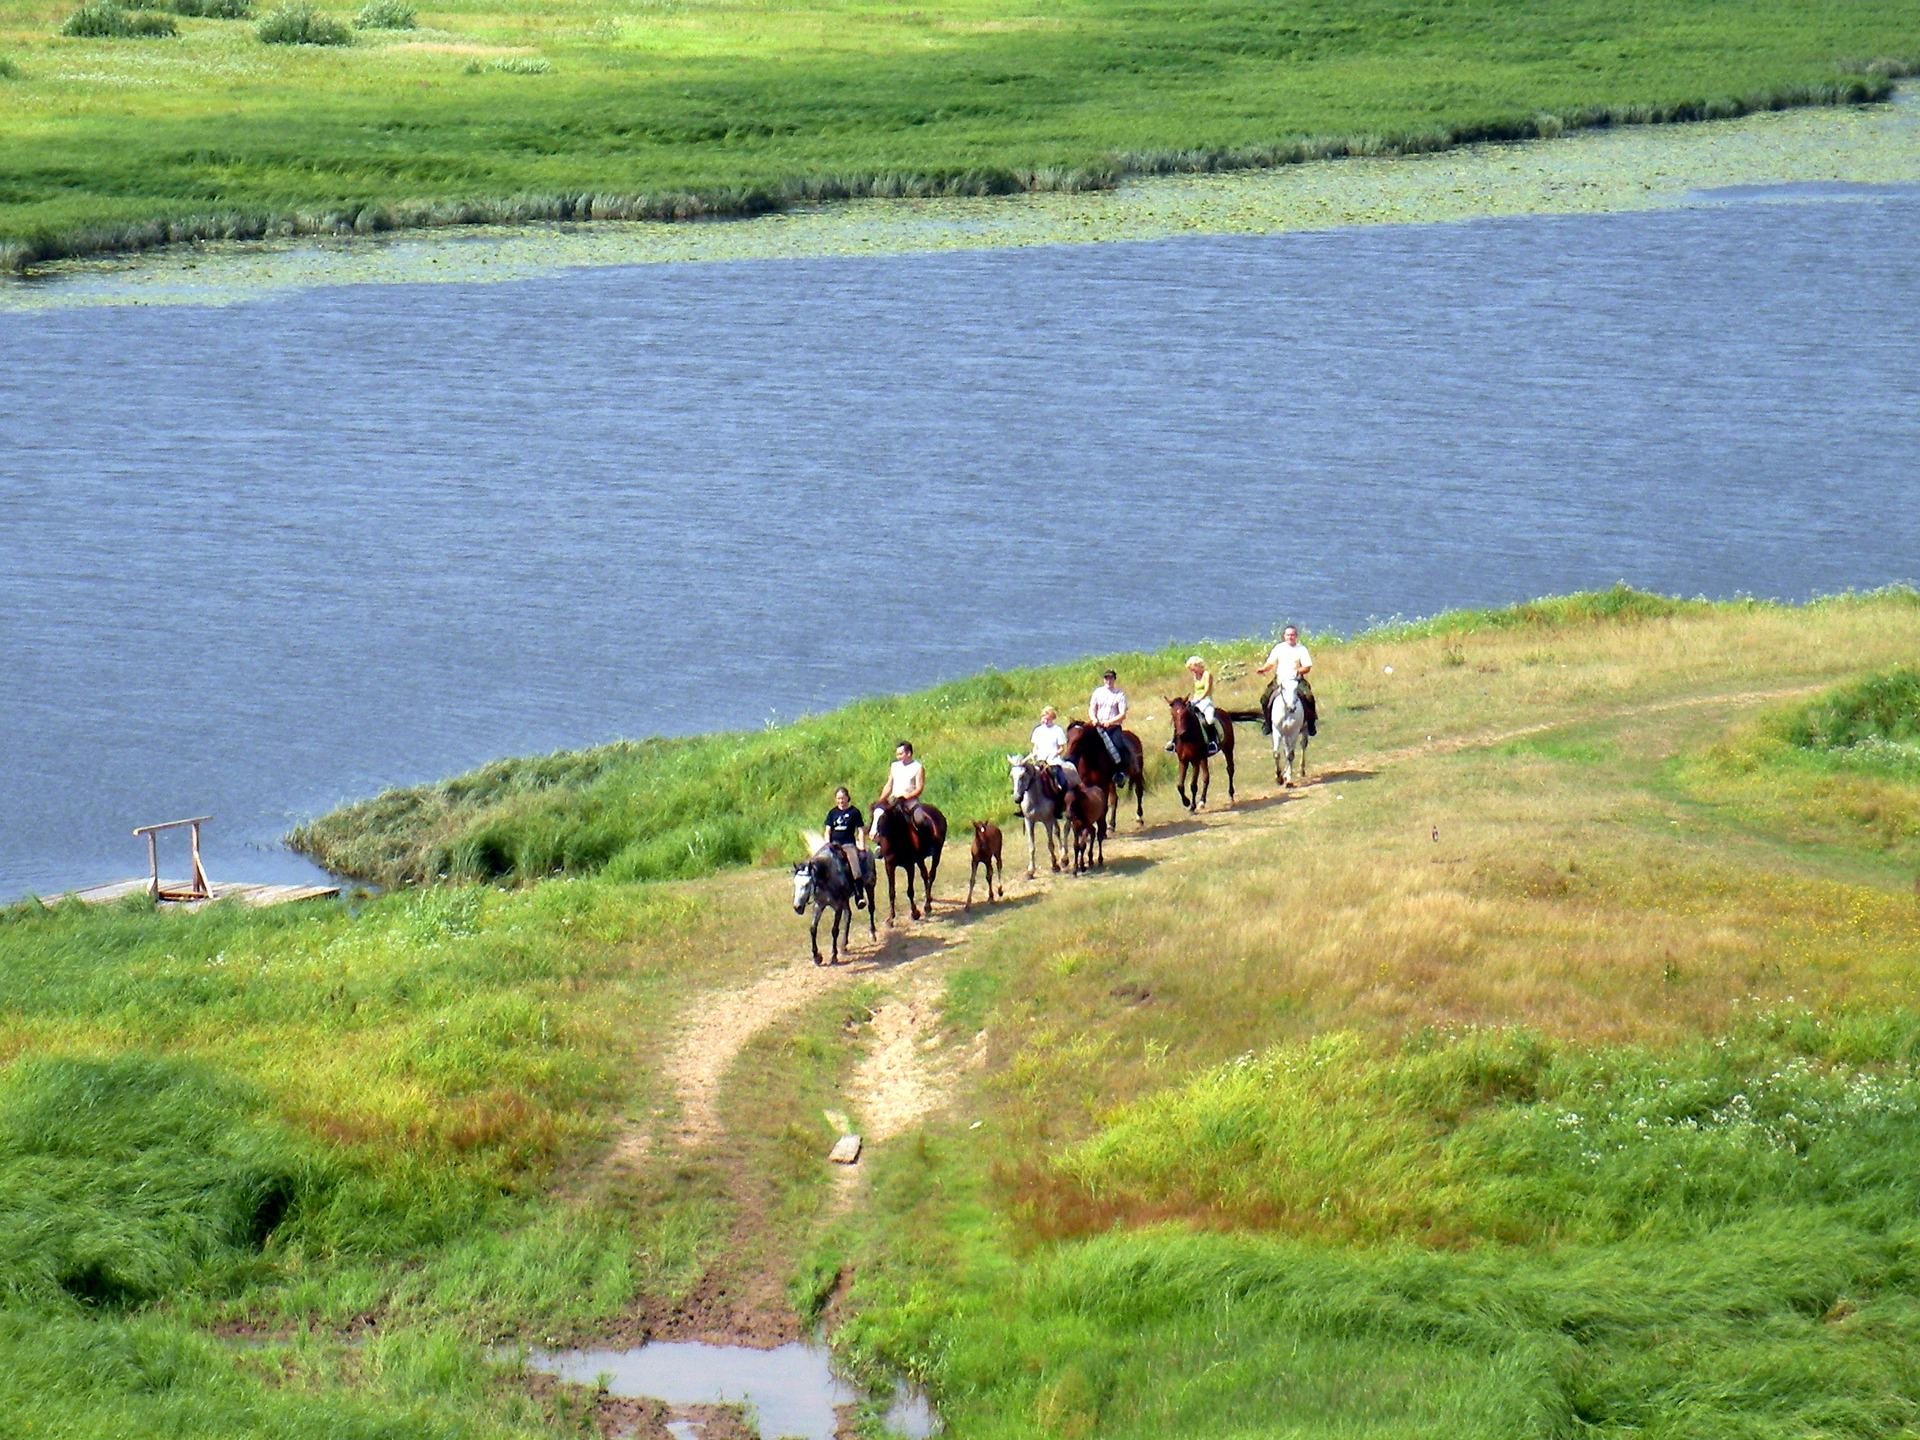 Οι άνθρωποι περπατούν κατά μήκος της ακτής της λίμνης για τα άλογα